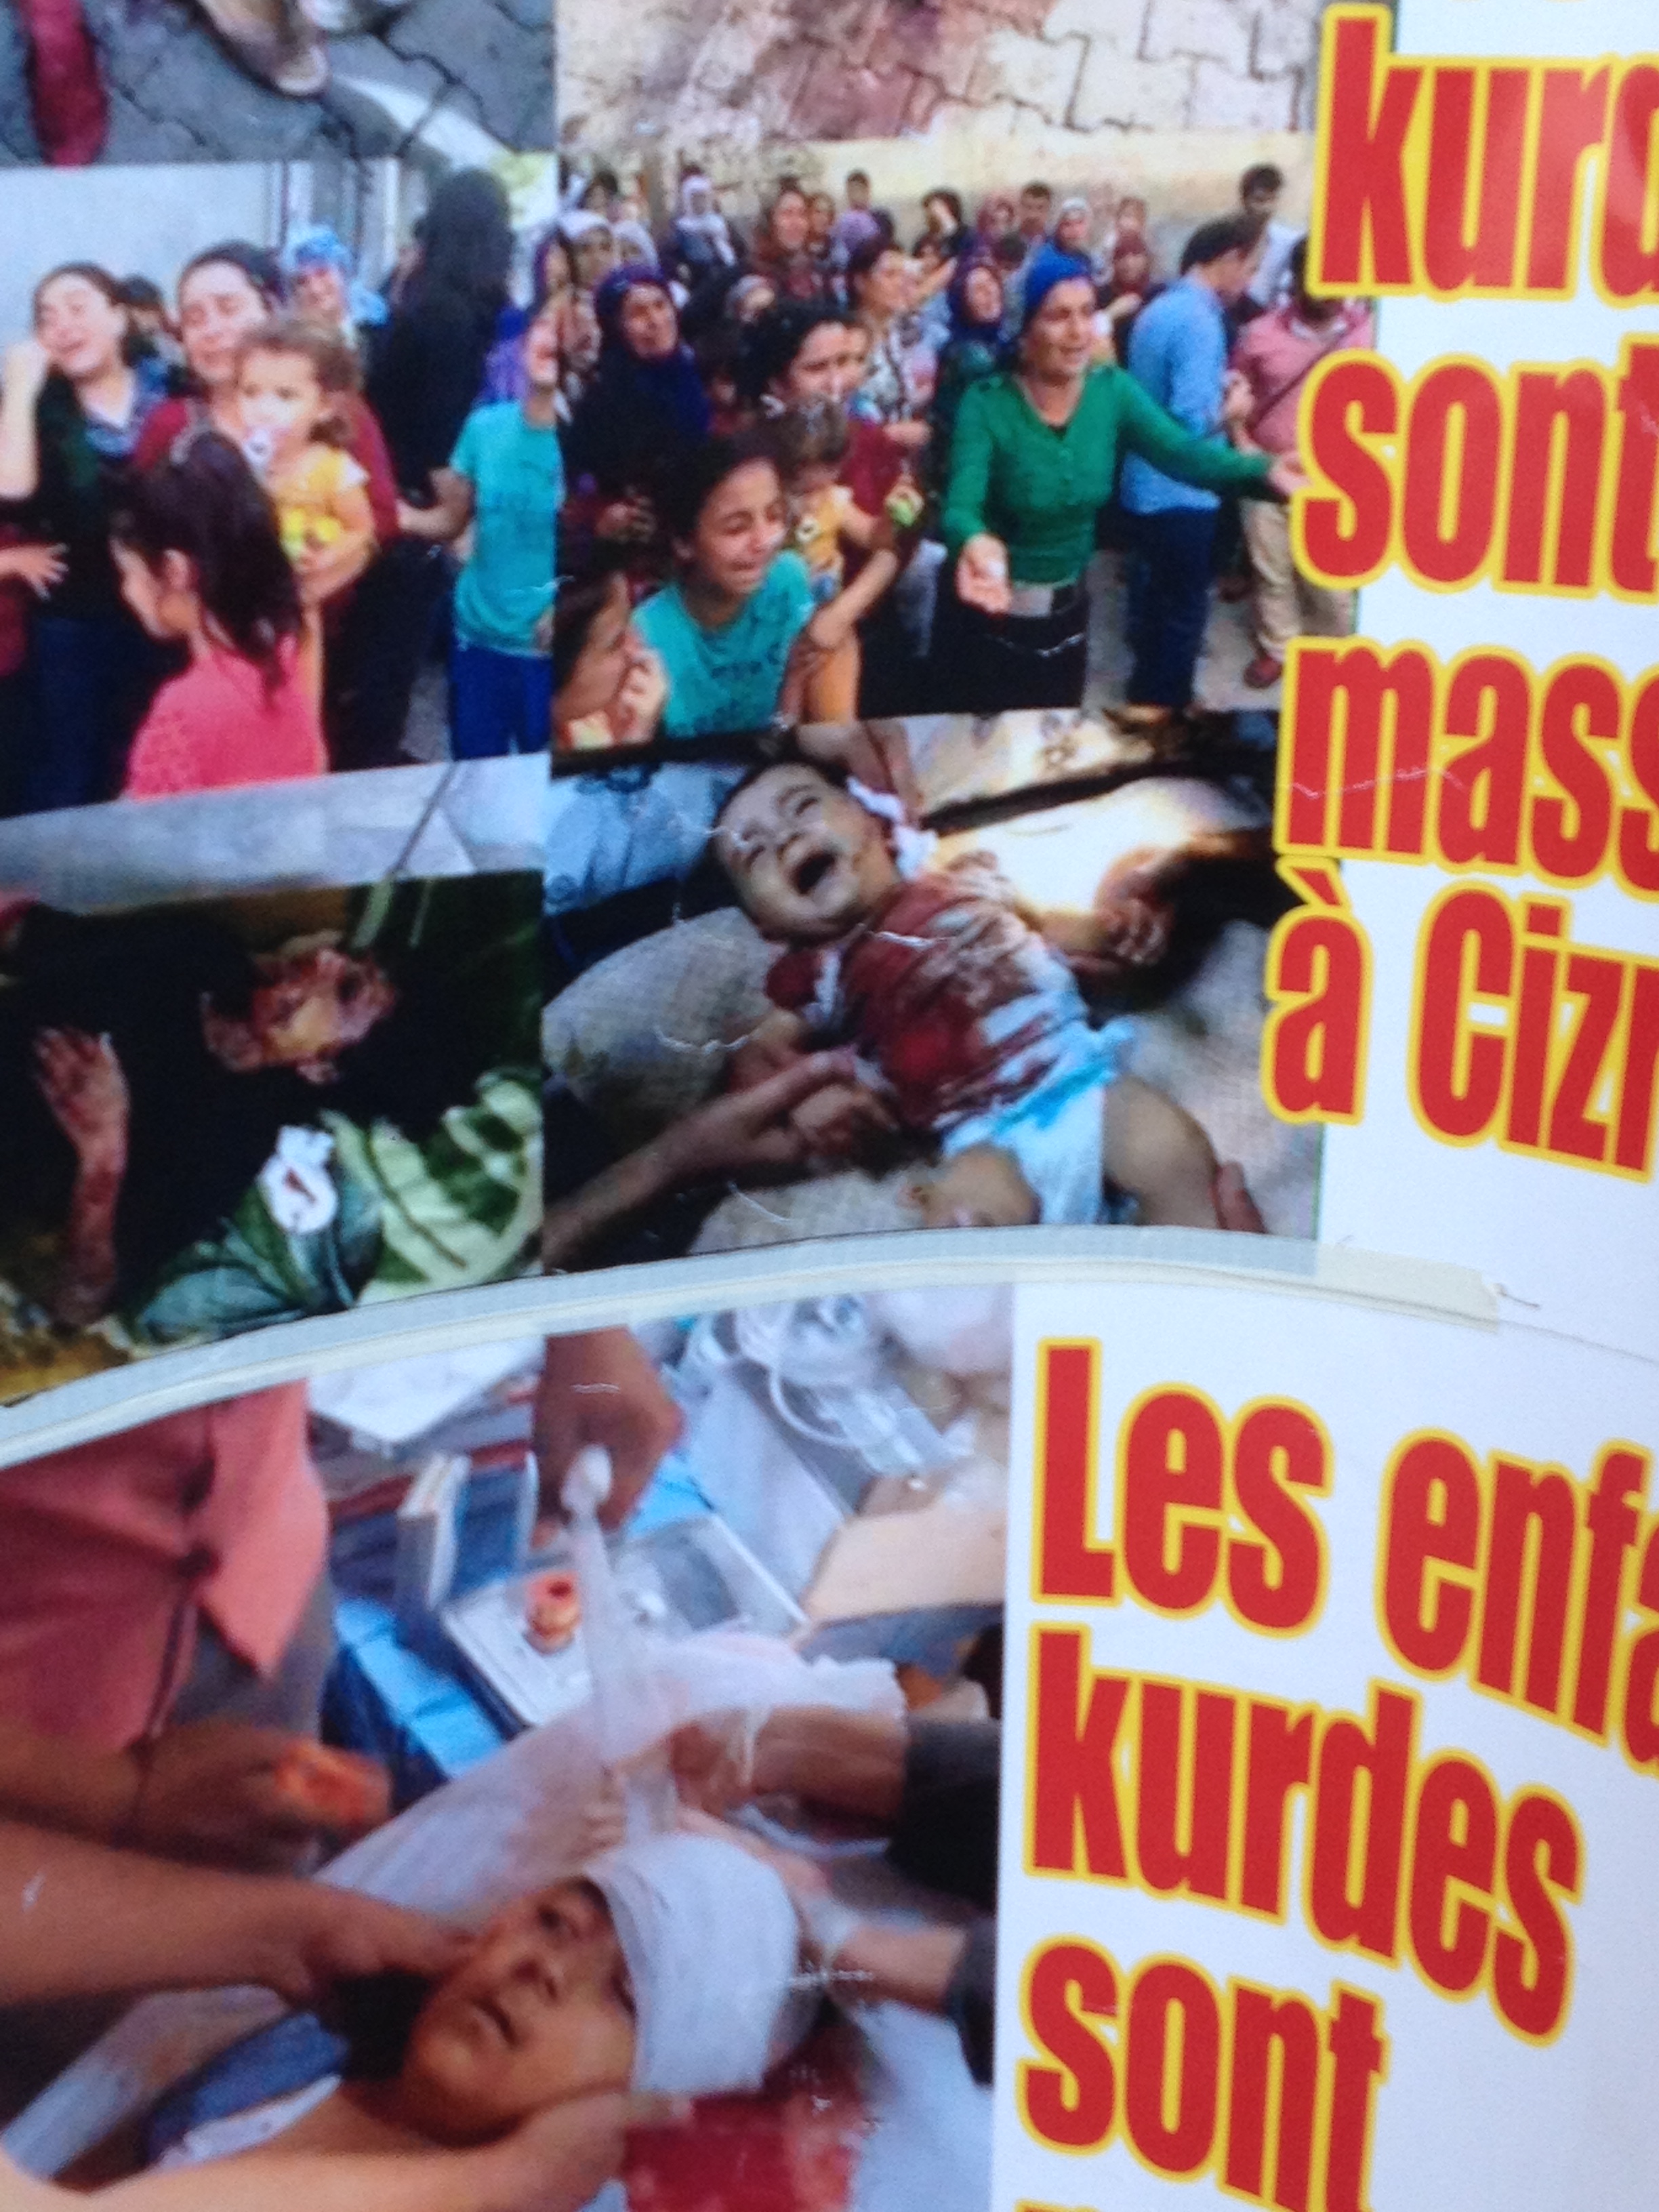 "Erdogan le magnifique"... et le massacre des kurdes